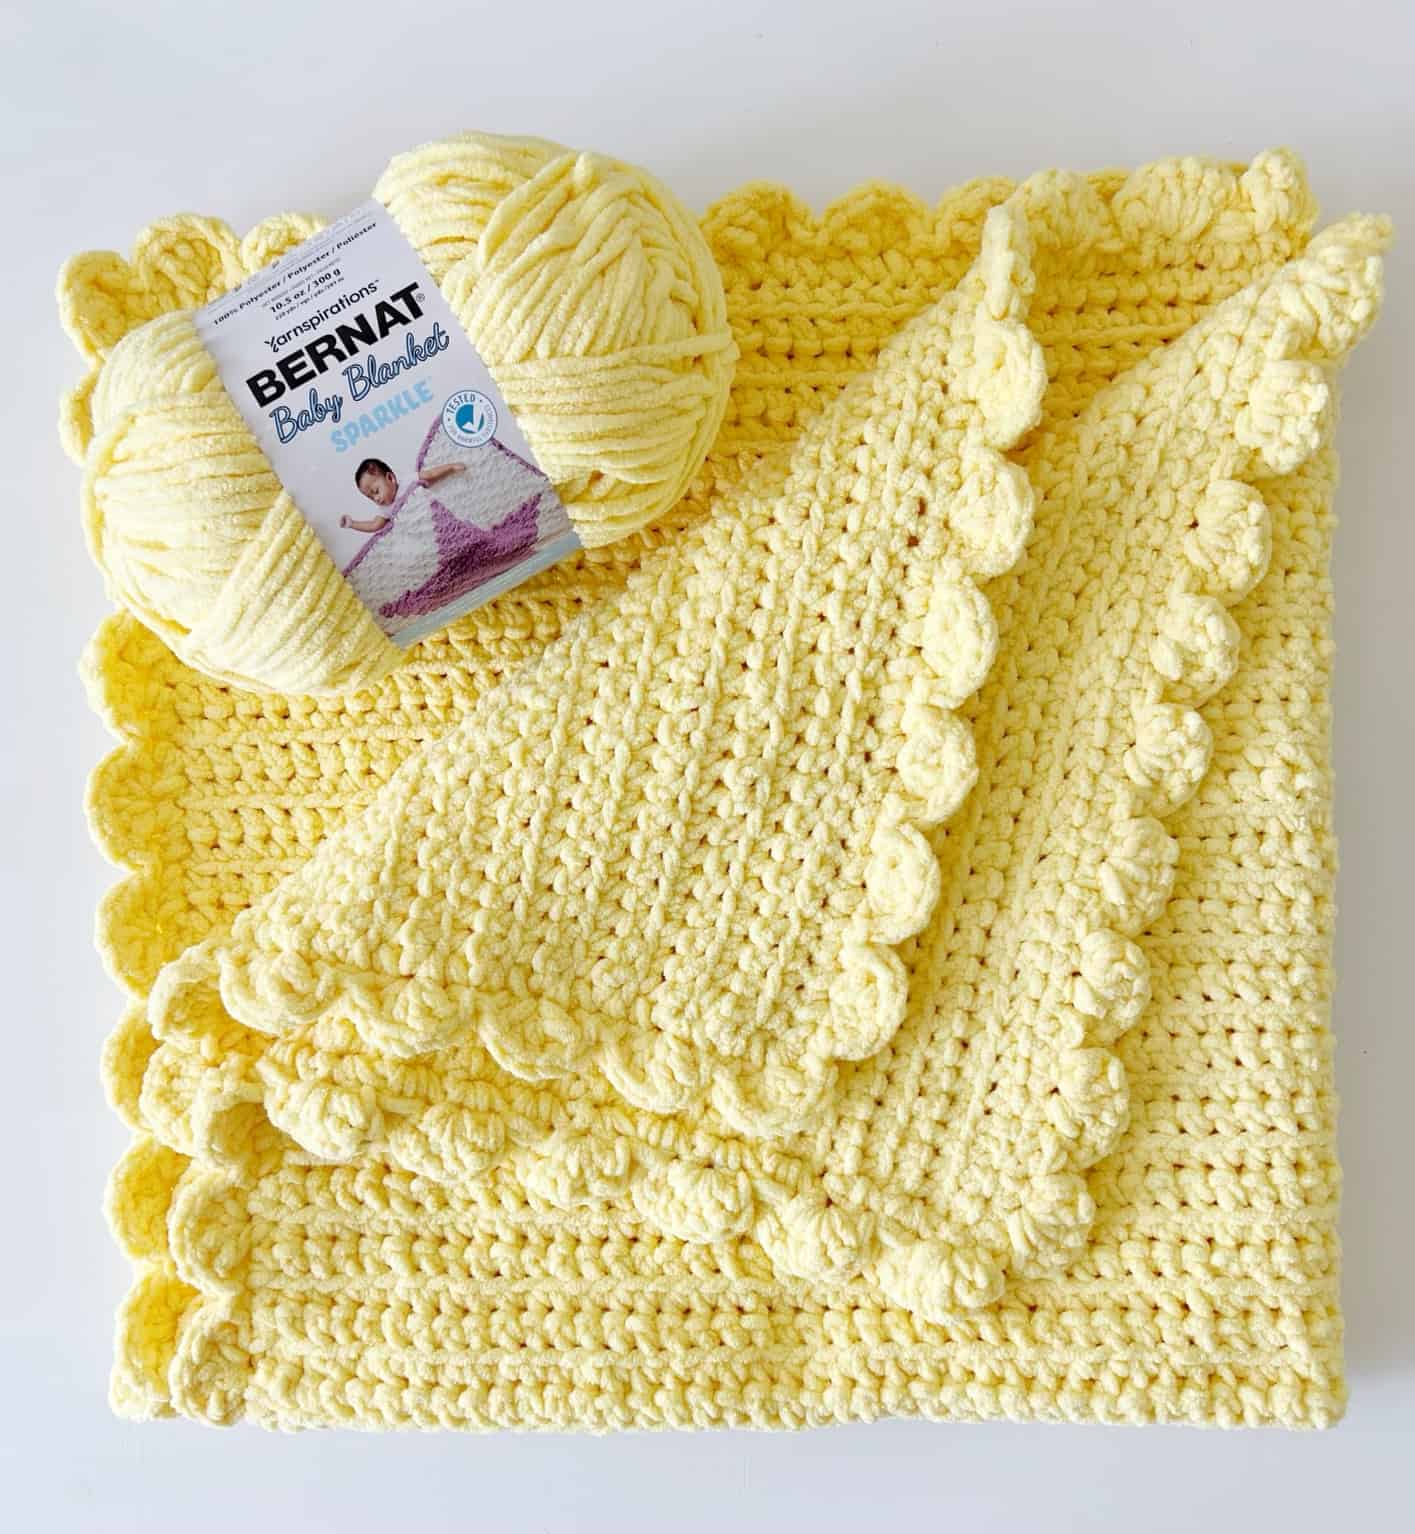 Best Baby Blanket Yarn for Crochet Projects in 2023